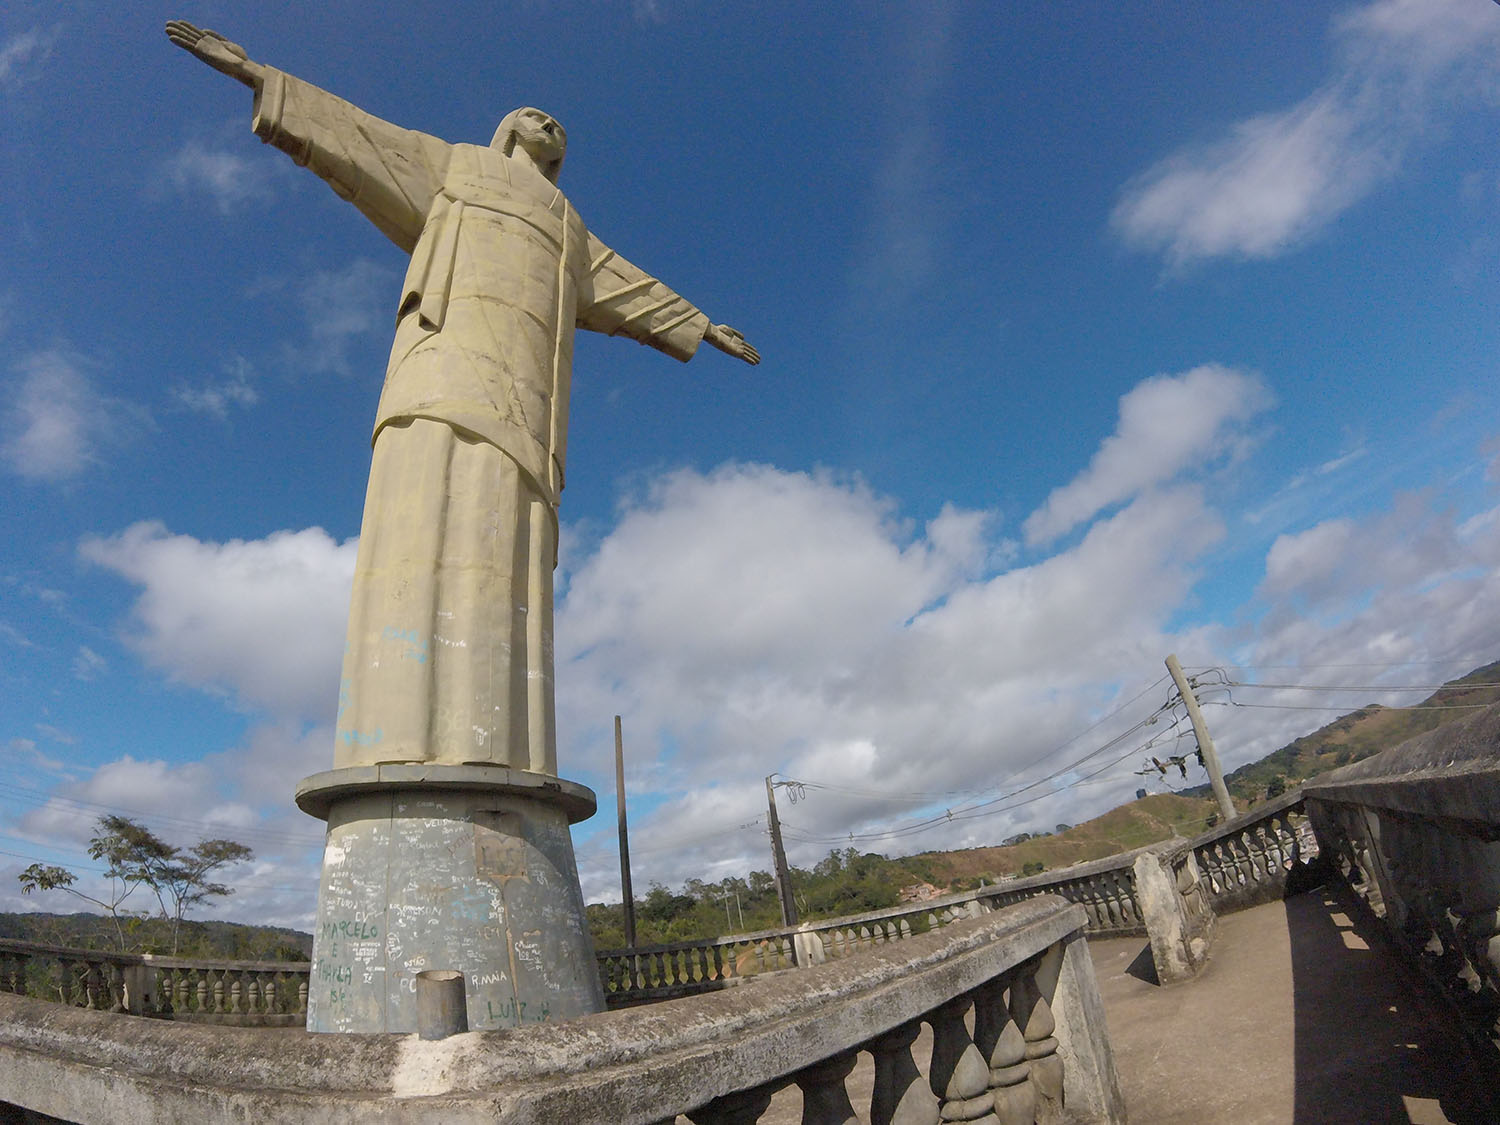 “O Cristo corre risco de desabar em algumas partes”, alerta vereador sobre Parque Municipal